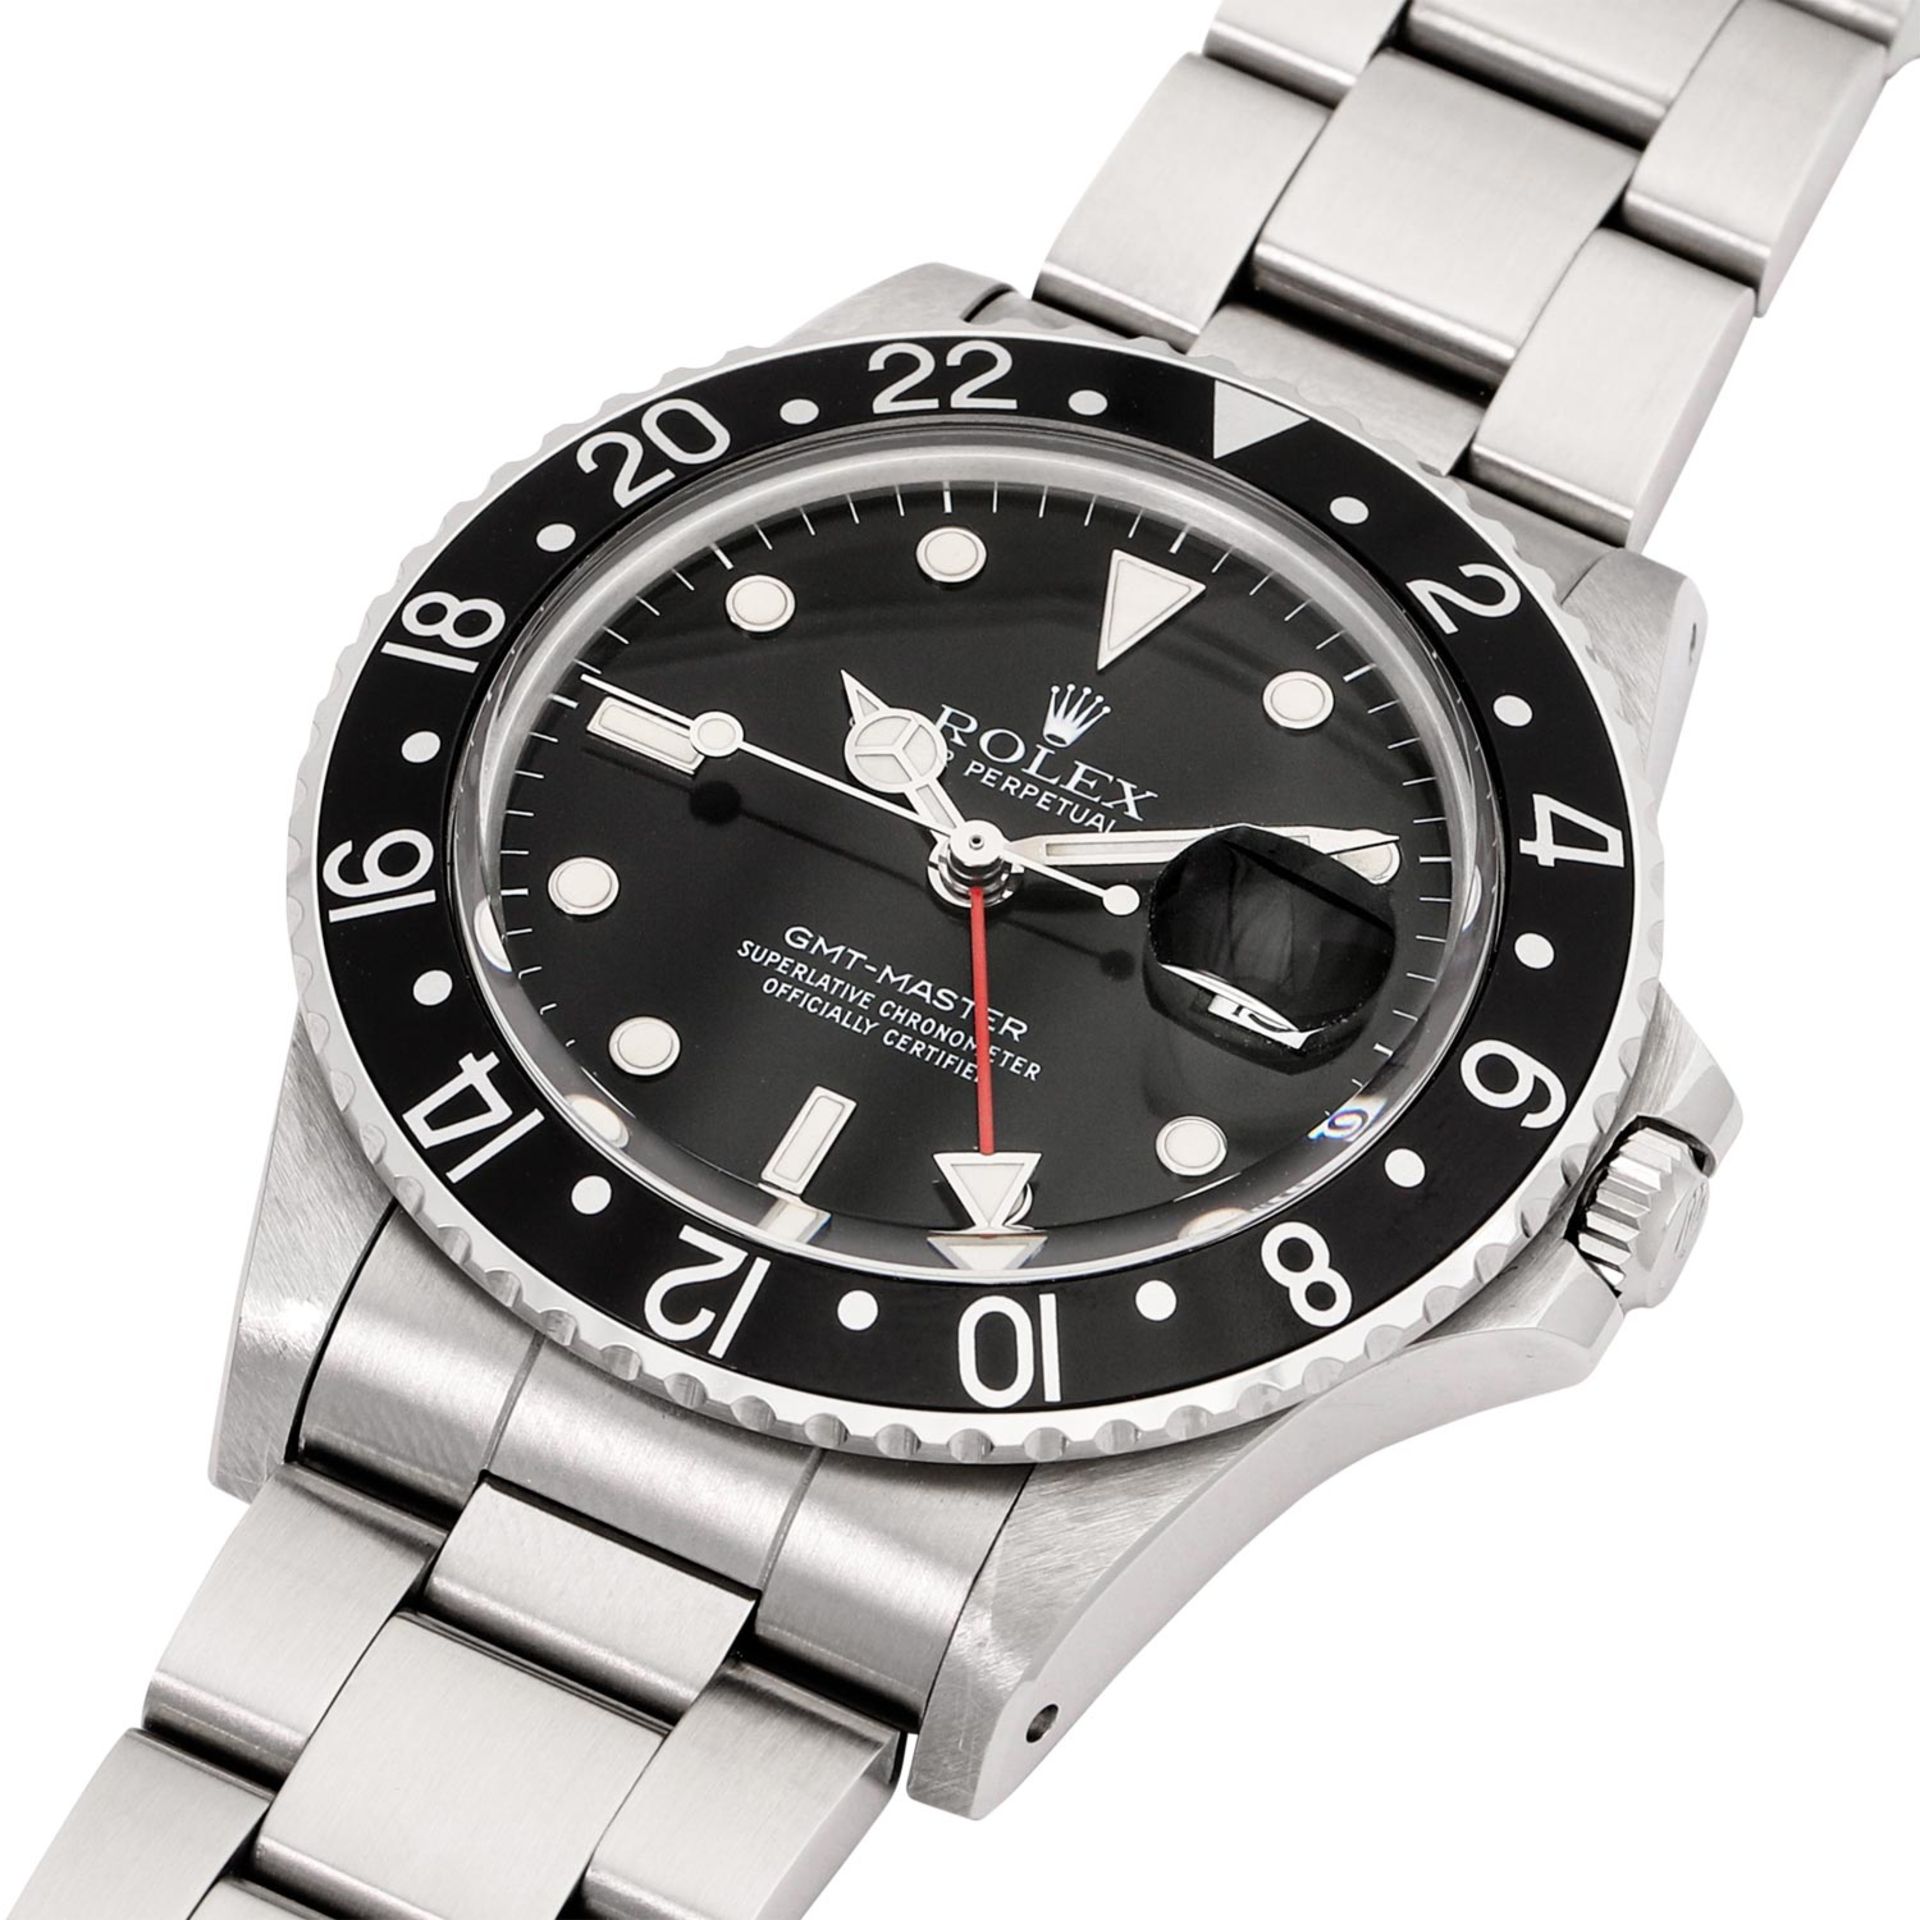 ROLEX Vintage GMT-MASTER "Stardust", Ref. 16750. Armbanduhr aus 1988. - Bild 5 aus 8